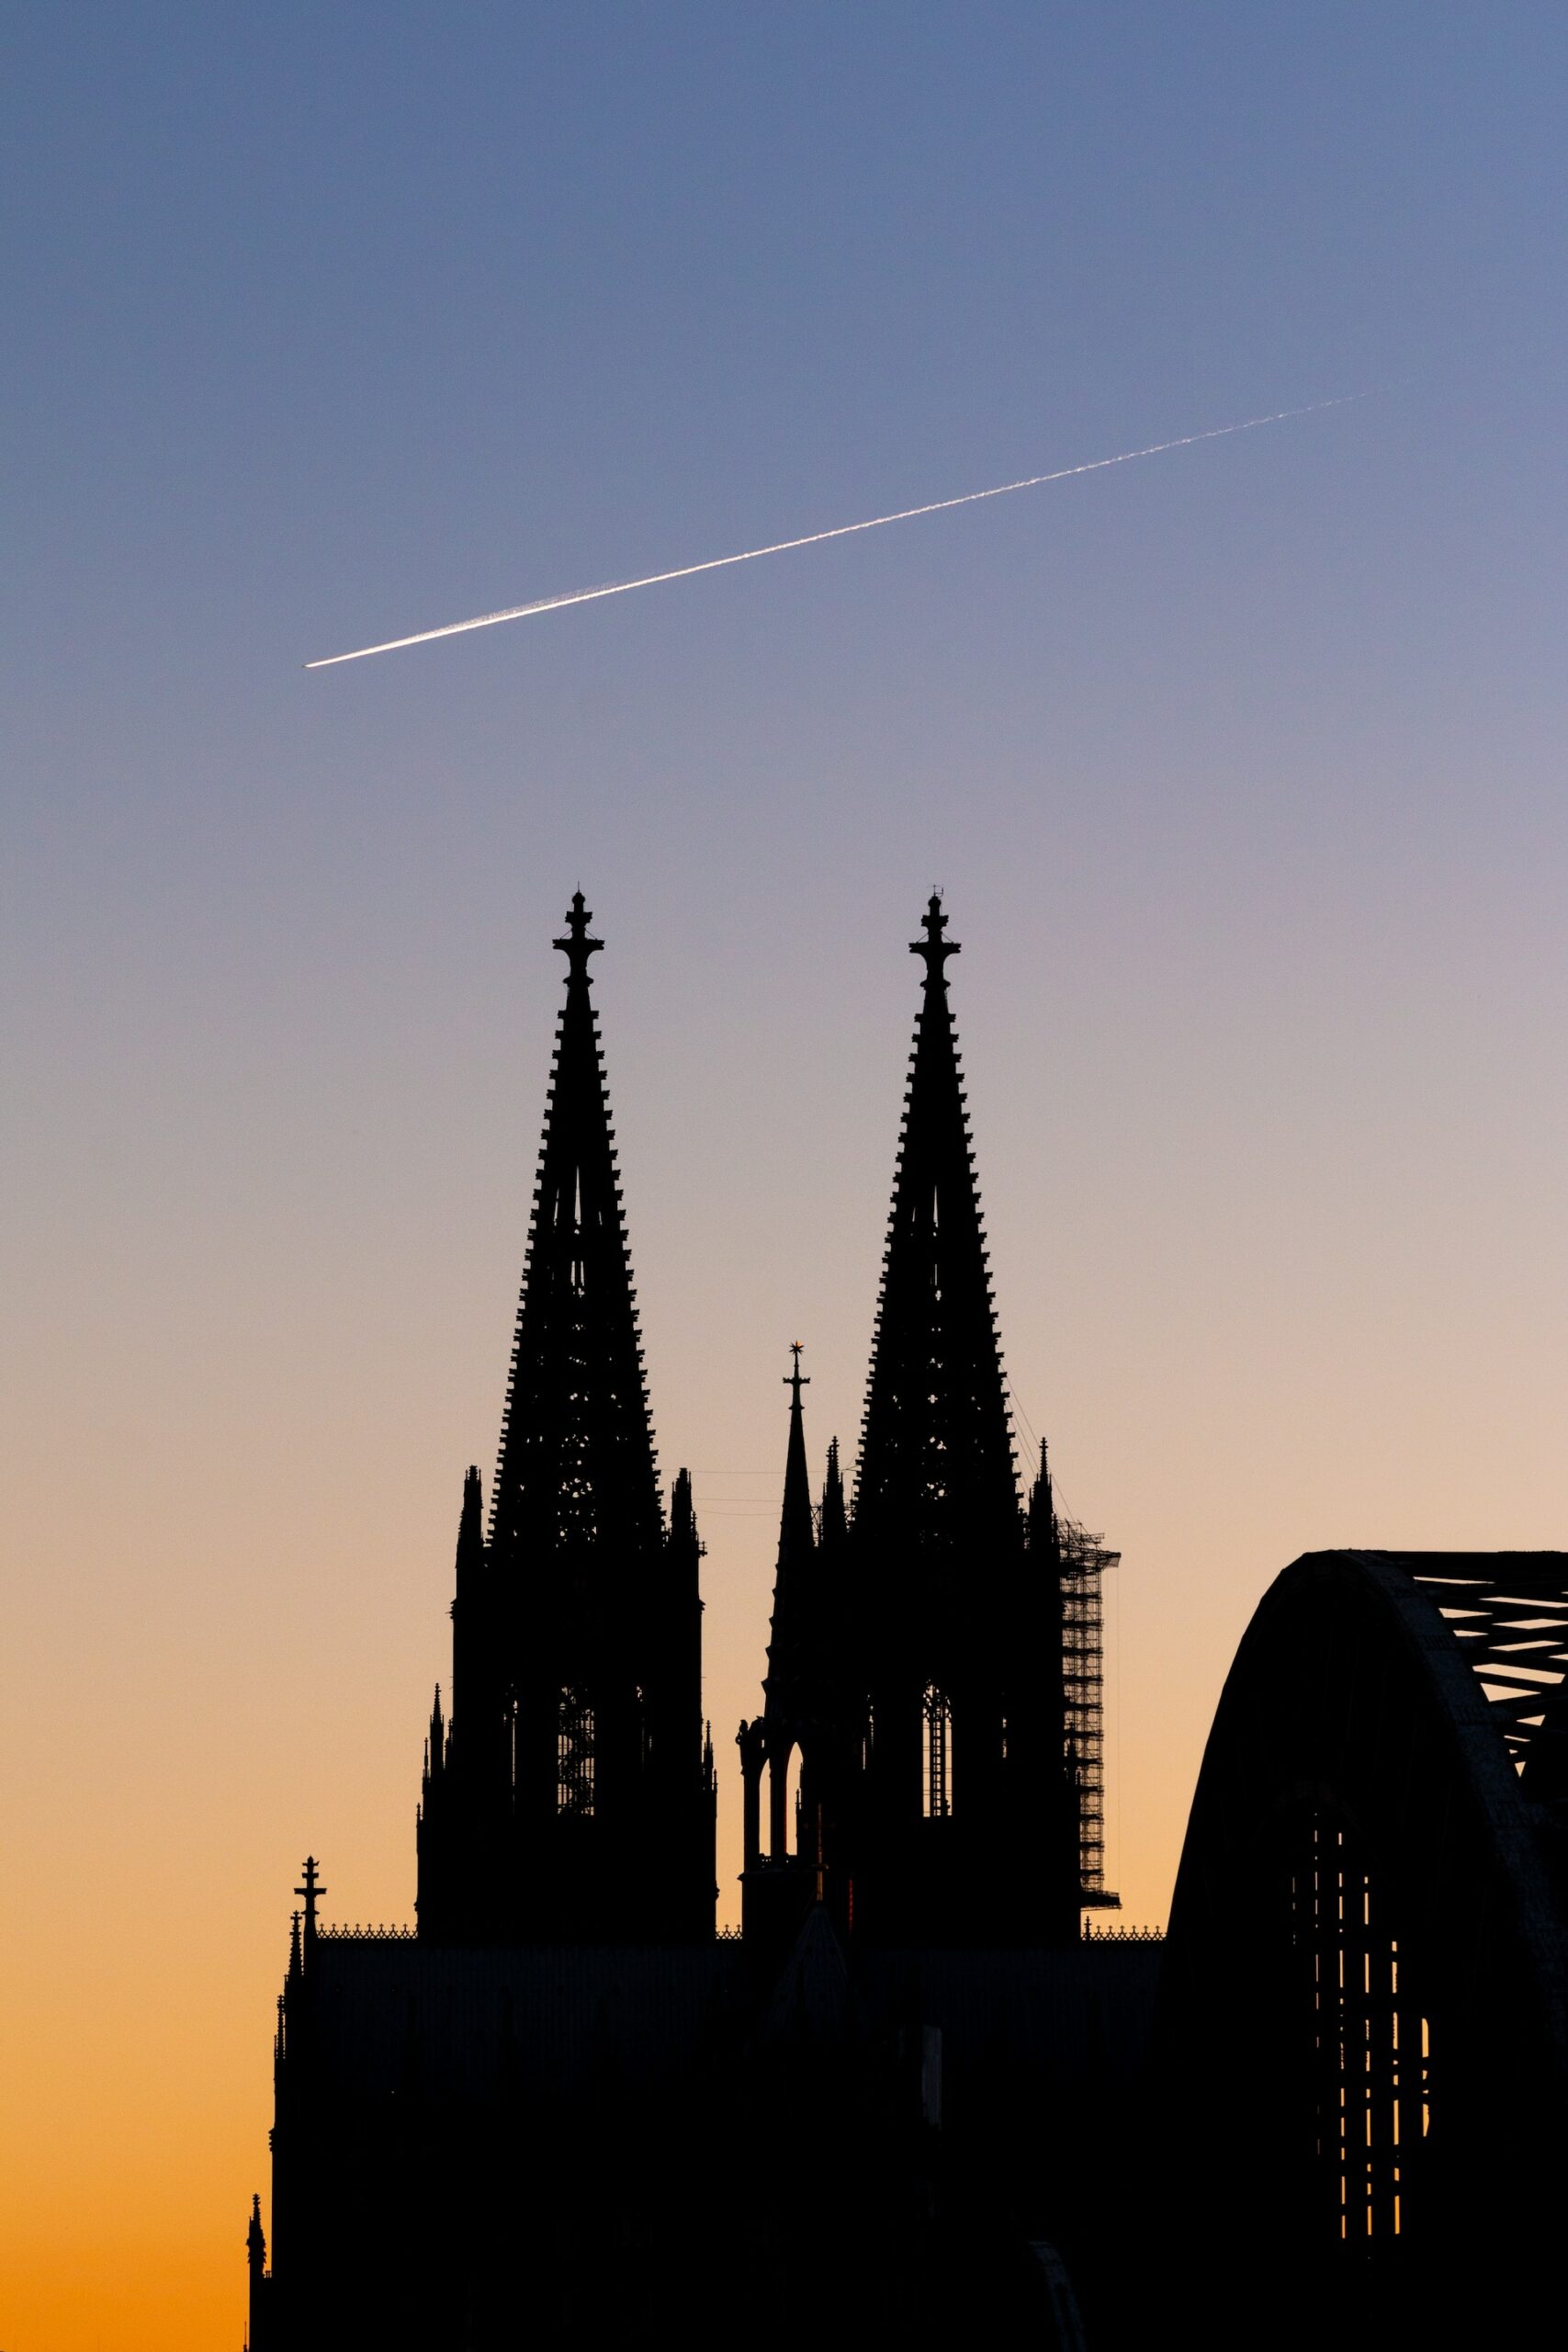 Der Kölner Dom ist eine gotische Kathedrale und eines der bekanntesten Wahrzeichen Deutschlands